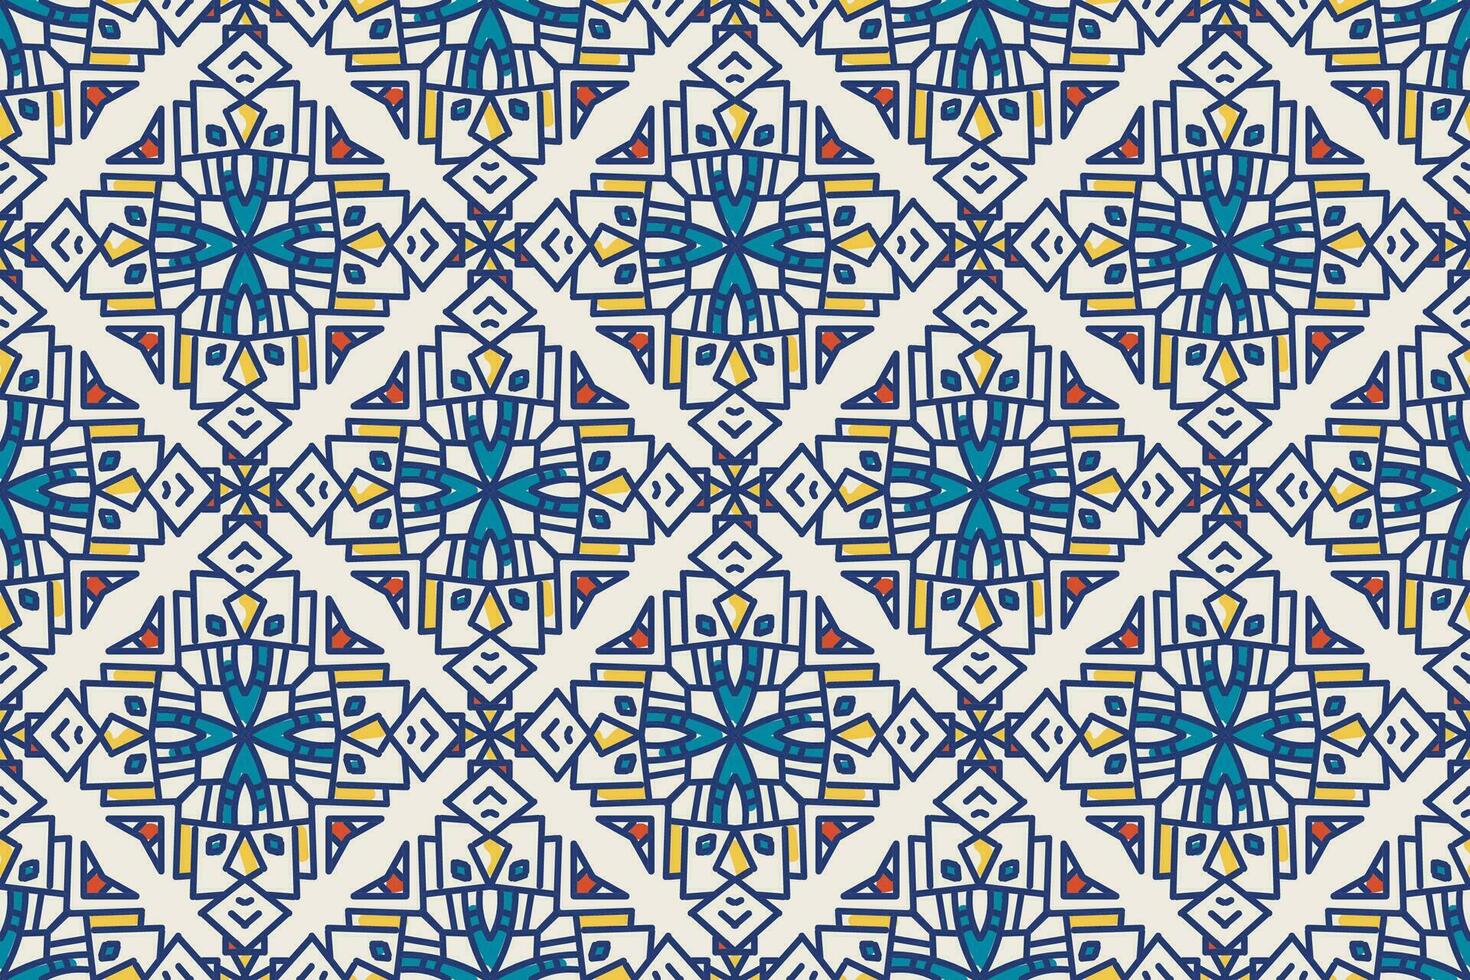 turkiska moské fönster vektor sömlös mönster. ramadan mubarak muslim bakgrund. traditionell ramadan kareem moské mönster med guld rutnät mosaik. islamic fönster rutnät design av lykta former kakel.